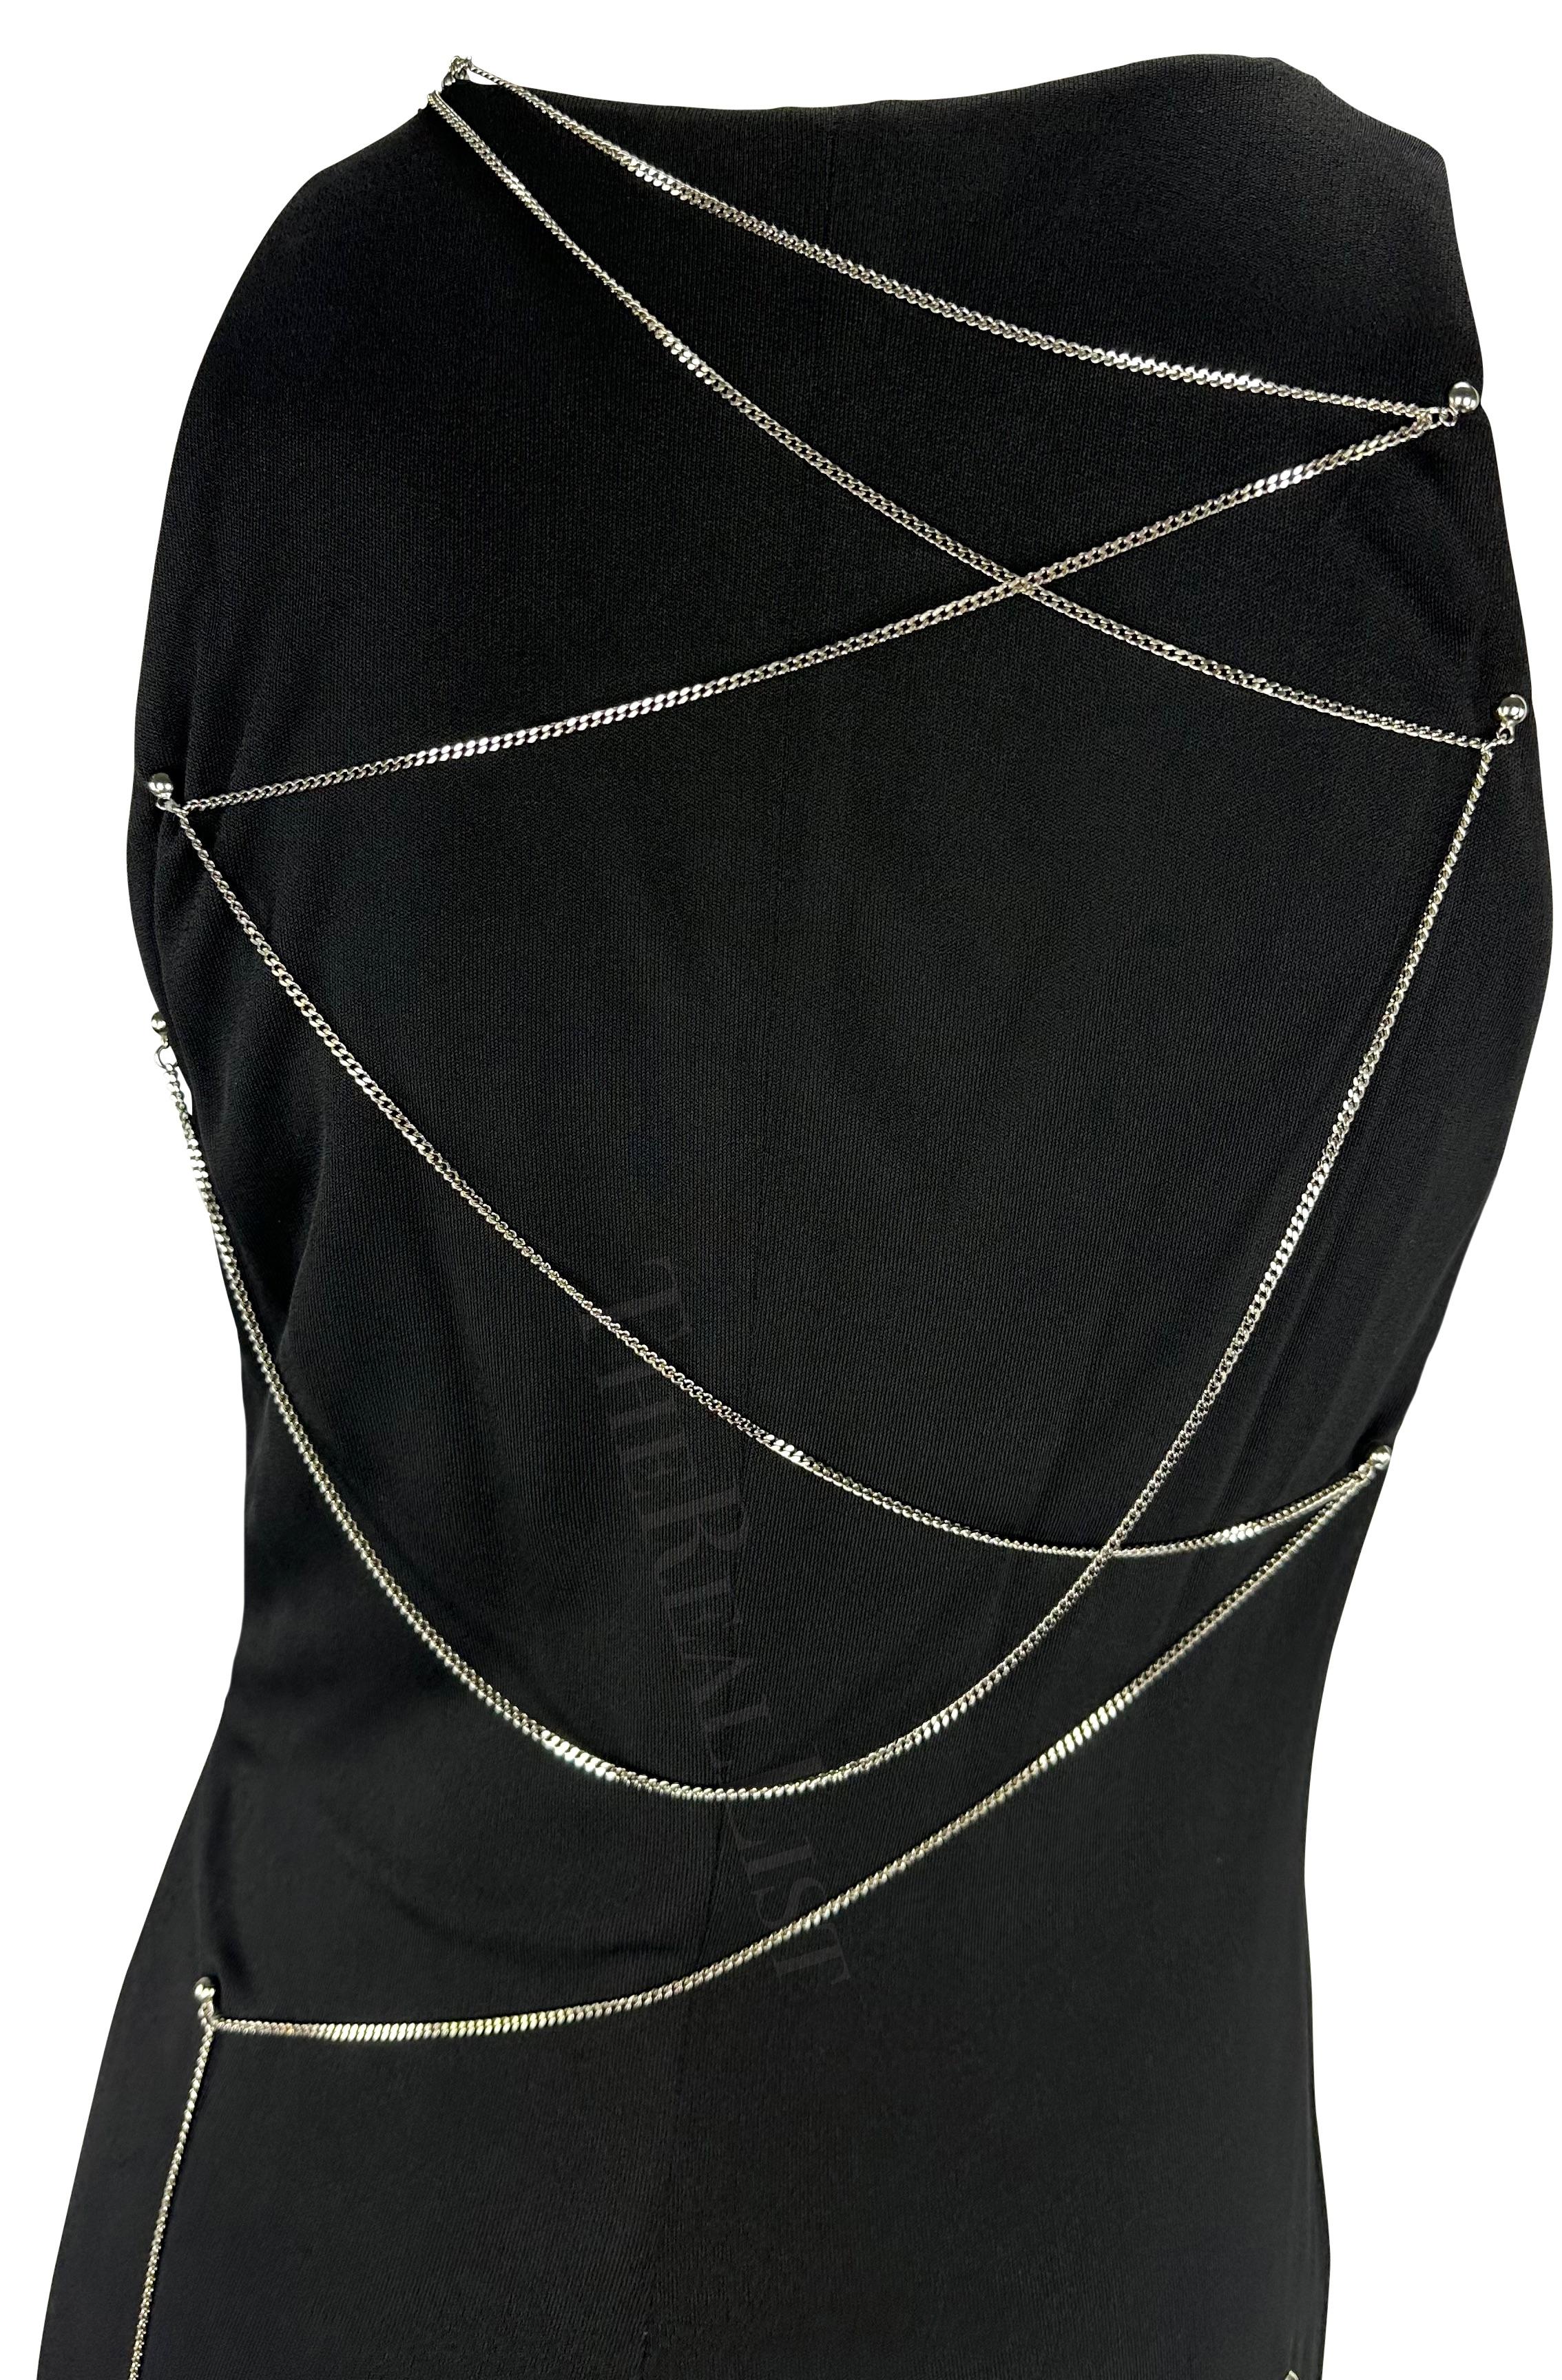 Présentation d'une robe en maille noire de Gianni Versace, dessinée par Donatella Versace. Datant de 1999, cette robe présente un décolleté en V doublé d'une chaîne argentée. Le dos de cette robe est complété par une chaîne argentée assortie qui se